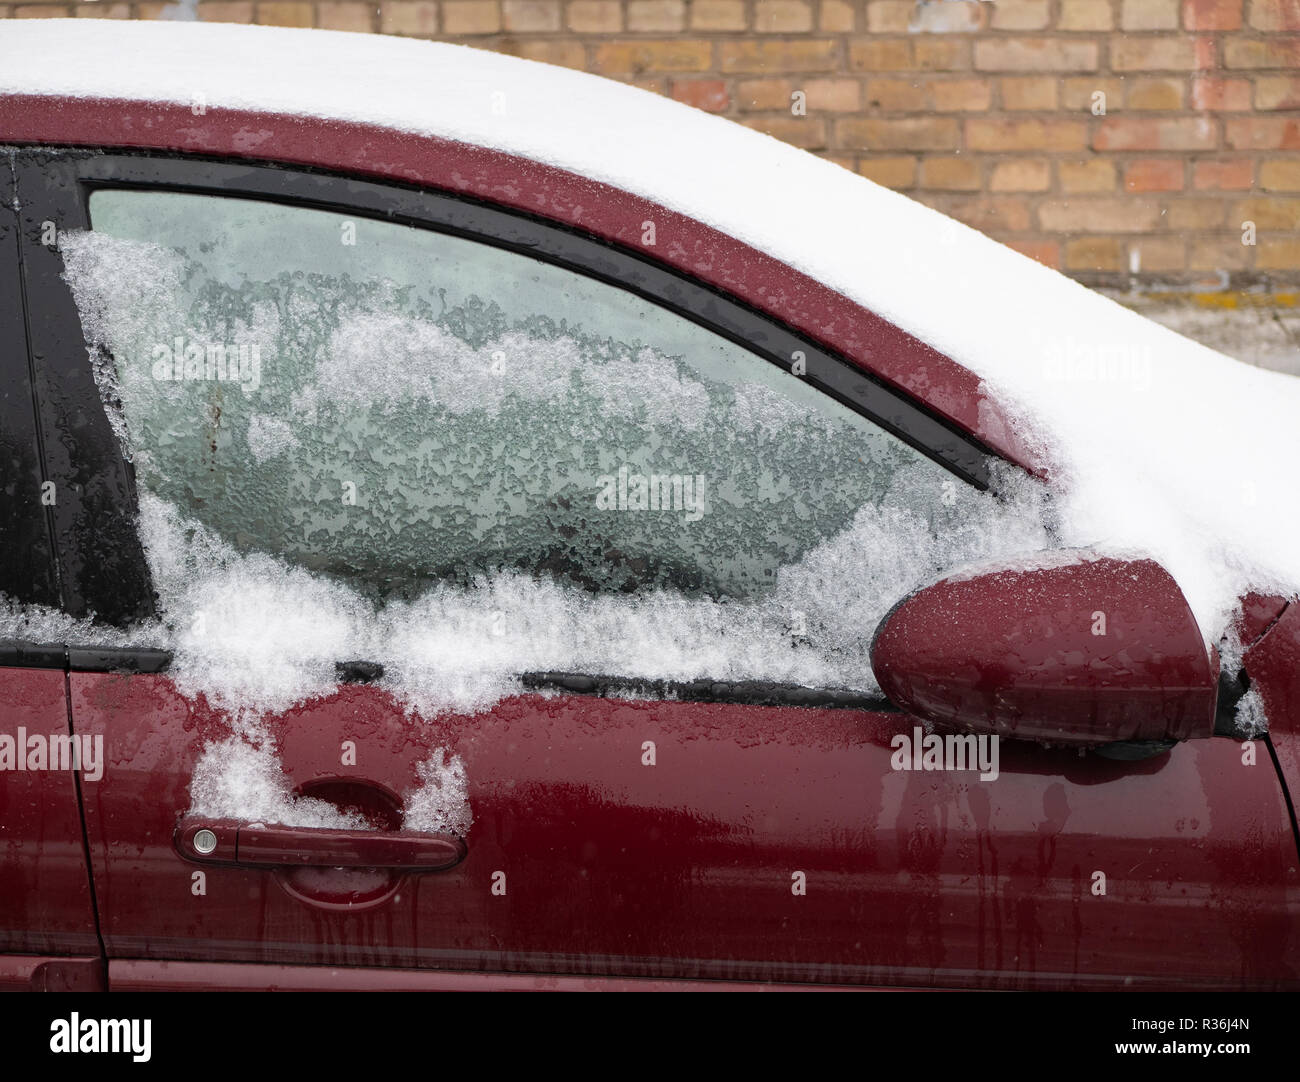 Gefrorene Seitenfenster von Burgund rot Auto. Schneedecke Frontscheibe und  Dach. closeup draußen Winter geschossen. Anti icing Flüssigkeit hilft  Stockfotografie - Alamy